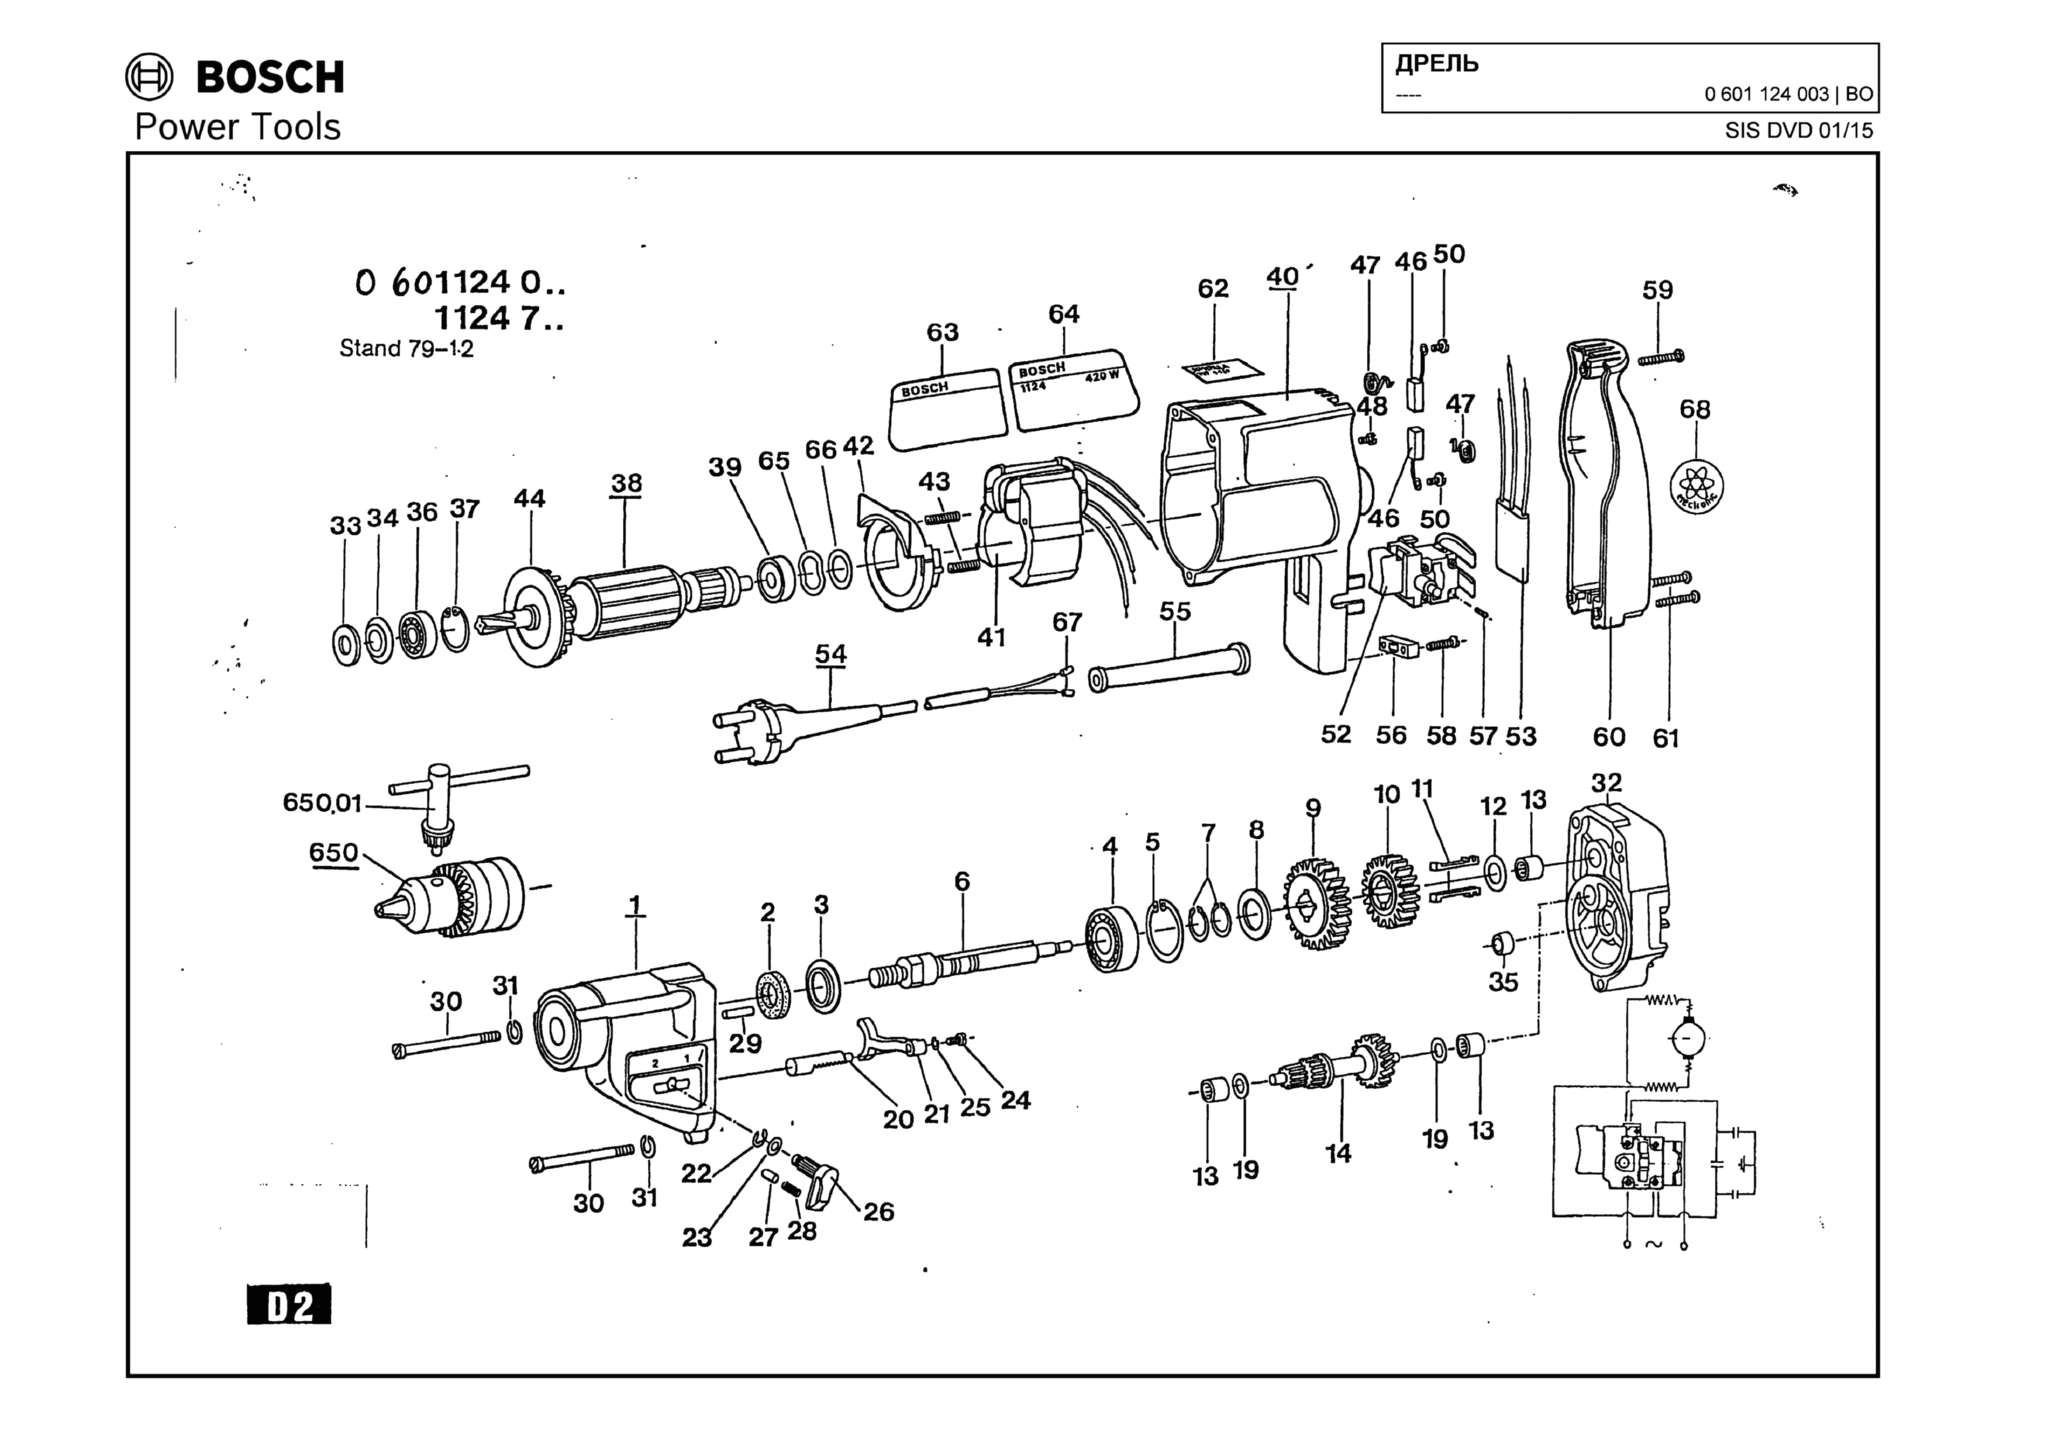 Запчасти, схема и деталировка Bosch (ТИП 0601124003)